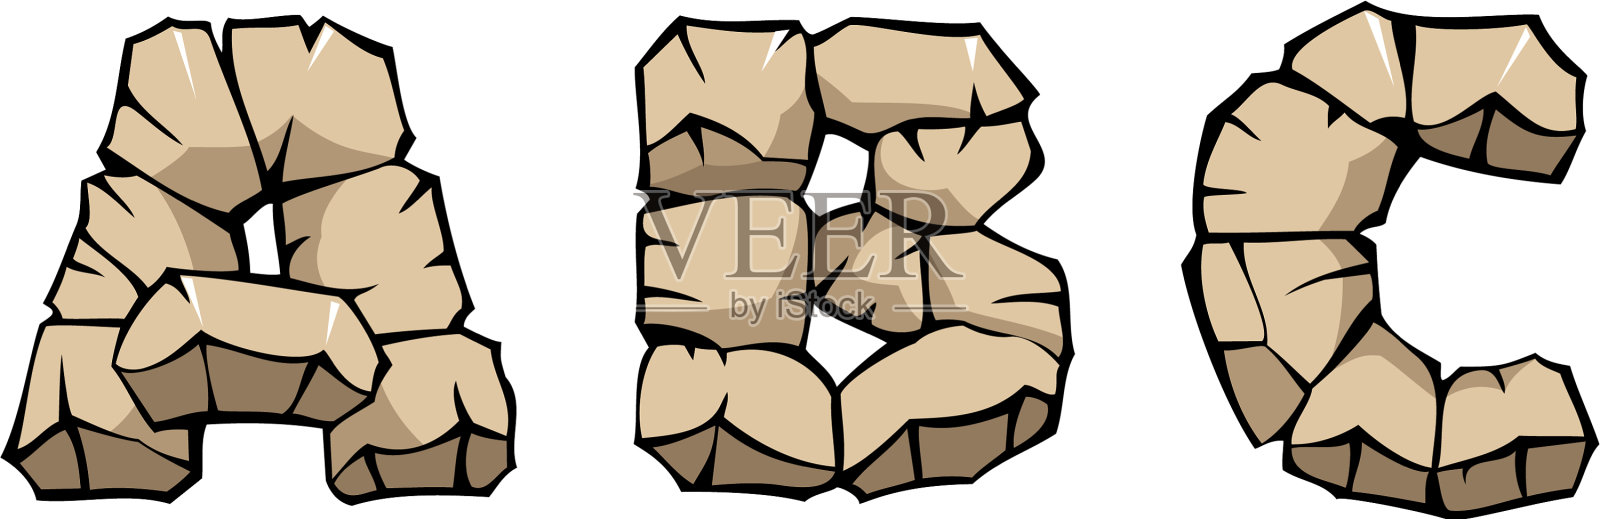 石头abc字母插画图片素材